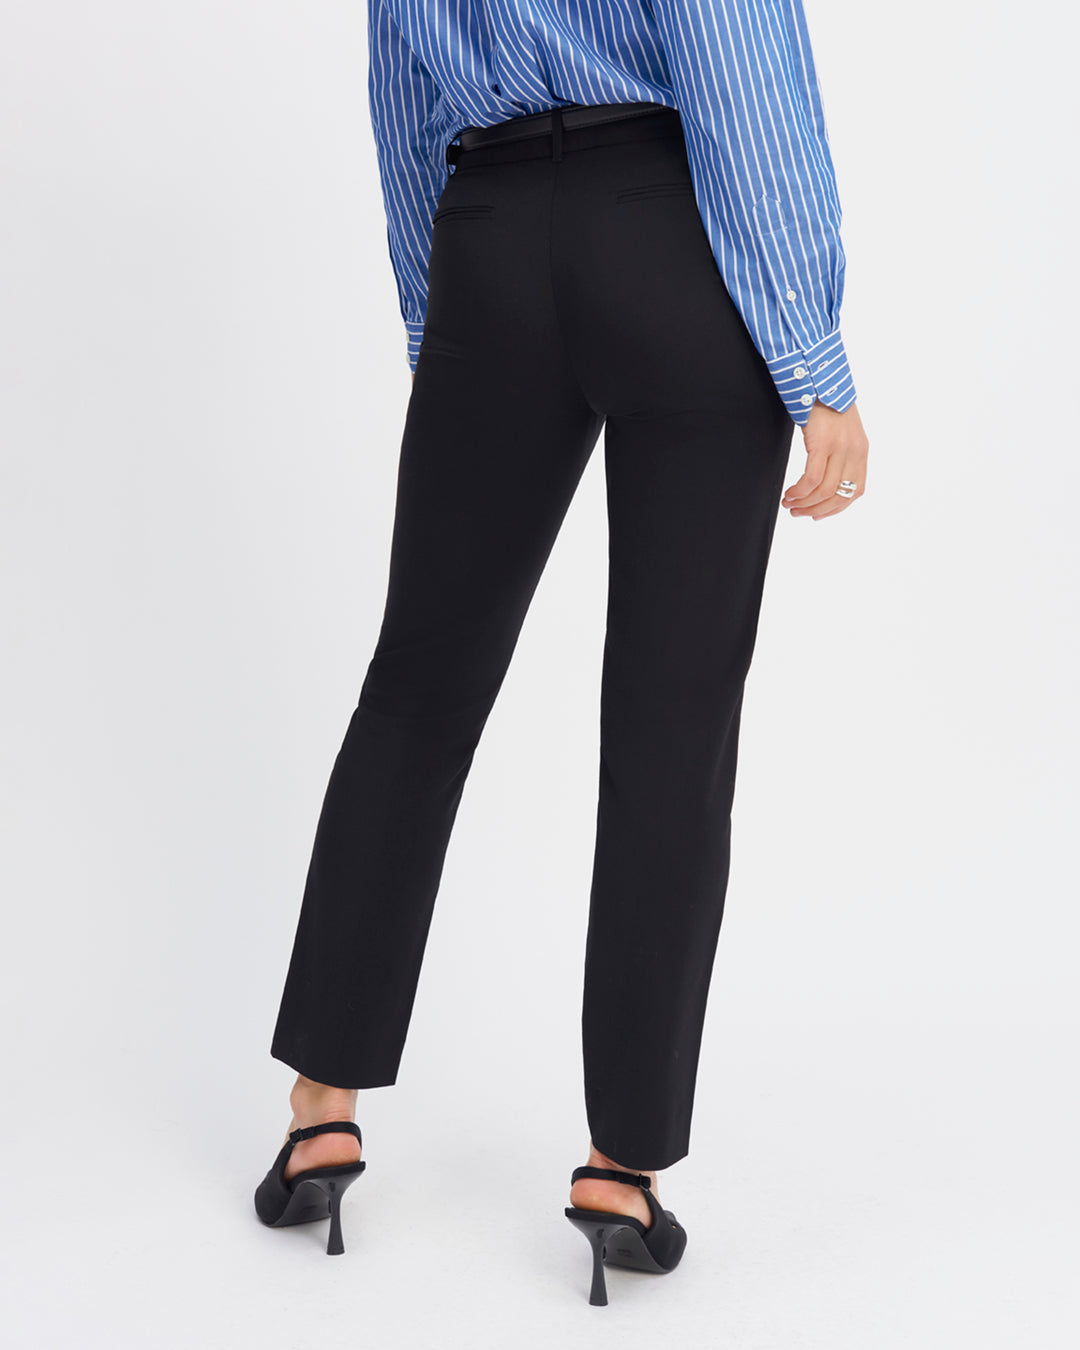 Tailor-pants-black-Cigarette-cut-Midi-tall-waist-Faux-pockets-cavalier-front-Pockets-passant-welt-back-17H10-tailors-for-women-paris-